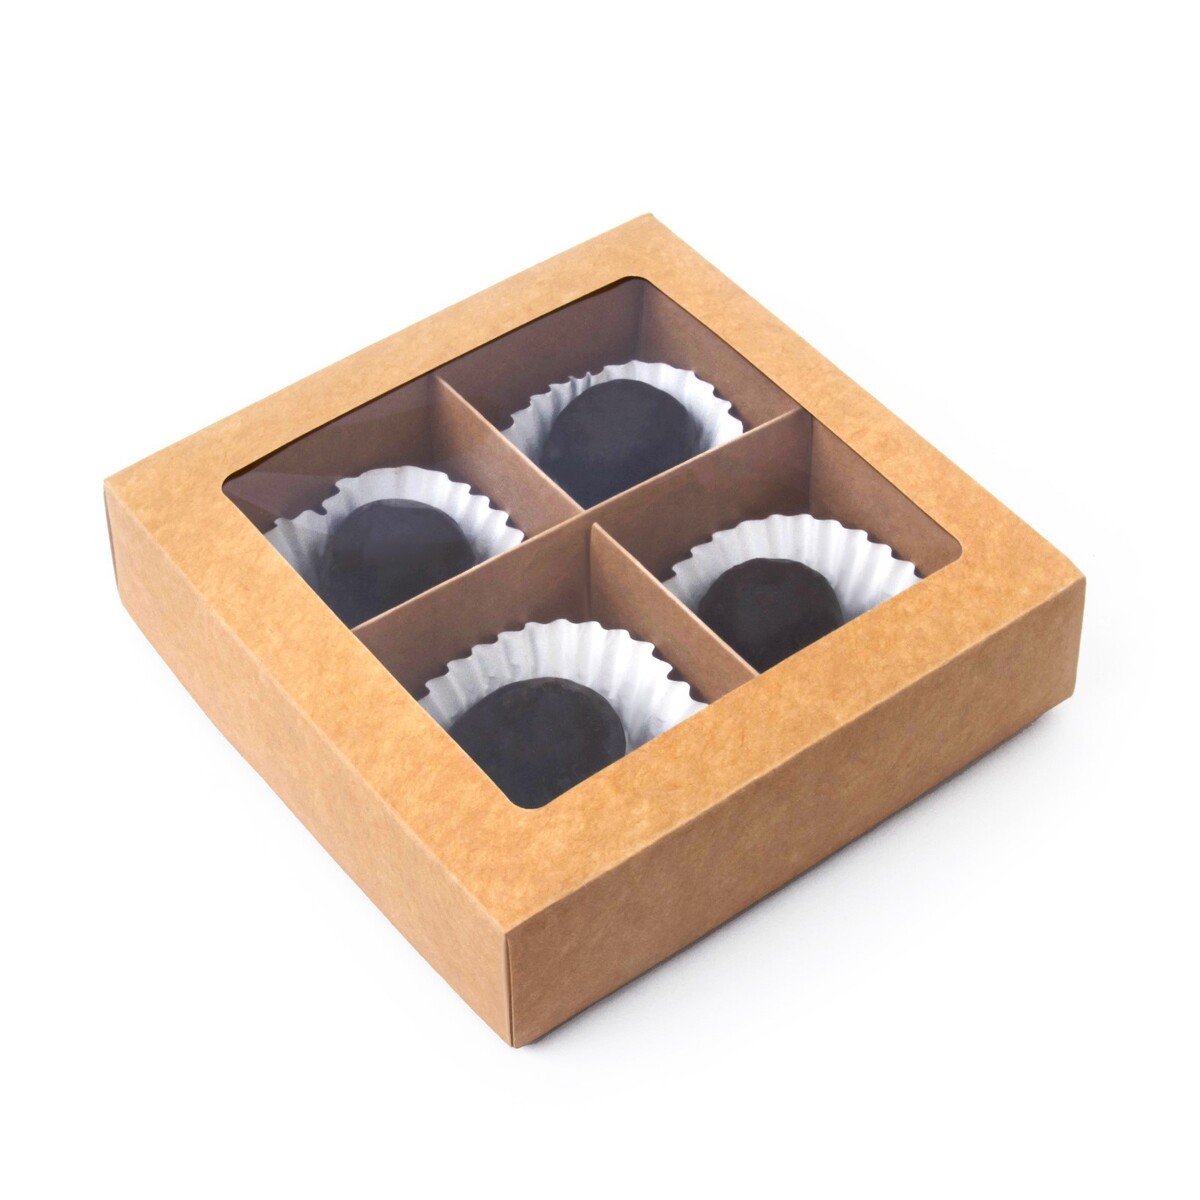 Коробка складная под 4 конфеты с окном, крафт, 12.6 х 12.6 х 3.5 см конфеты я в шоколаде с дробленым орехом конти